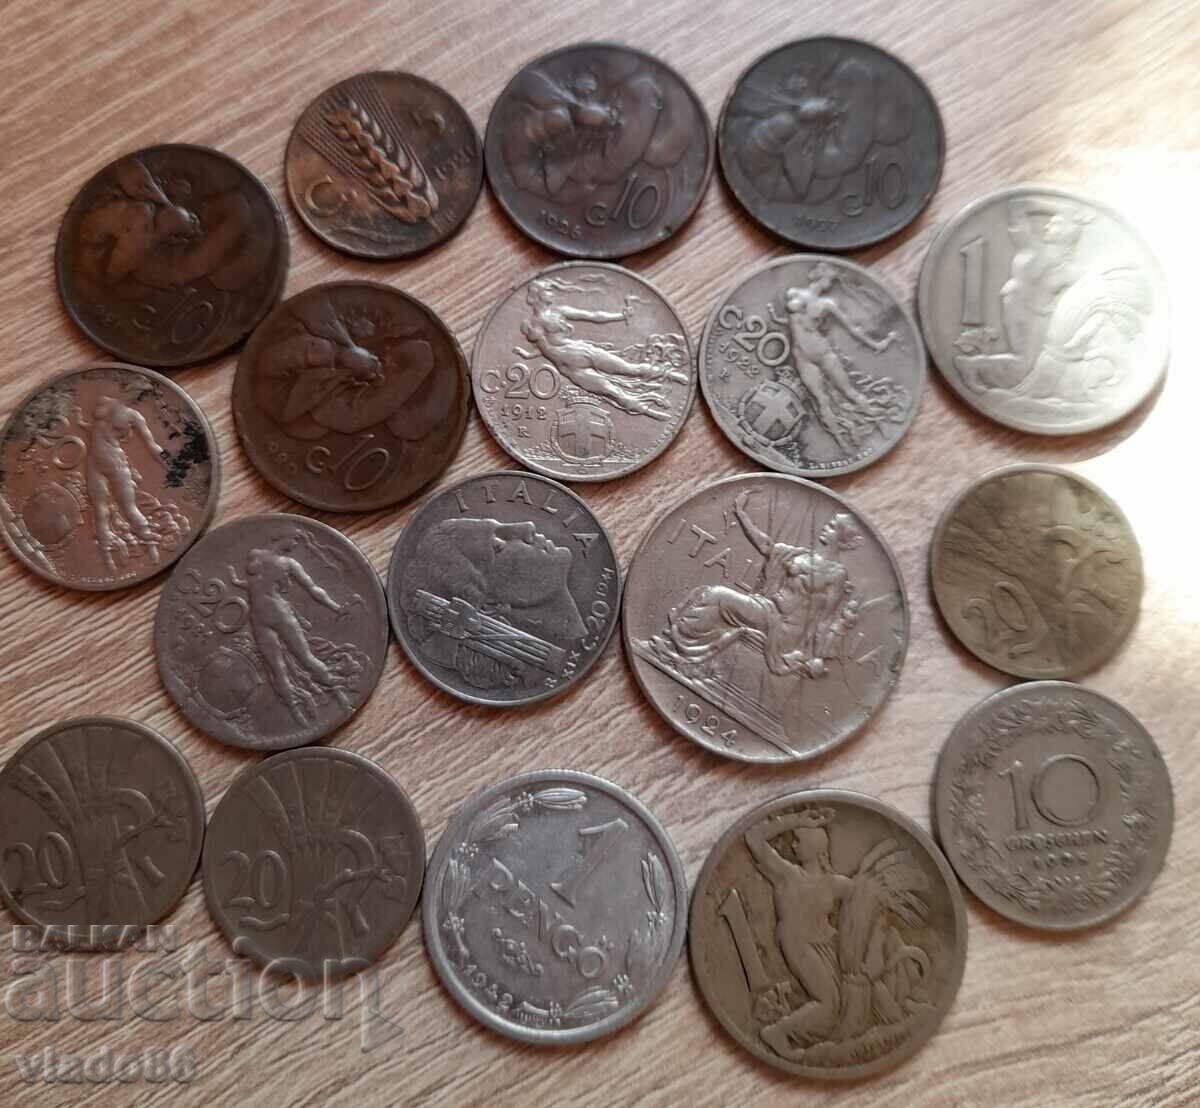 Πολλά παλιά ιταλικά, τσέχικα, αυστριακά νομίσματα